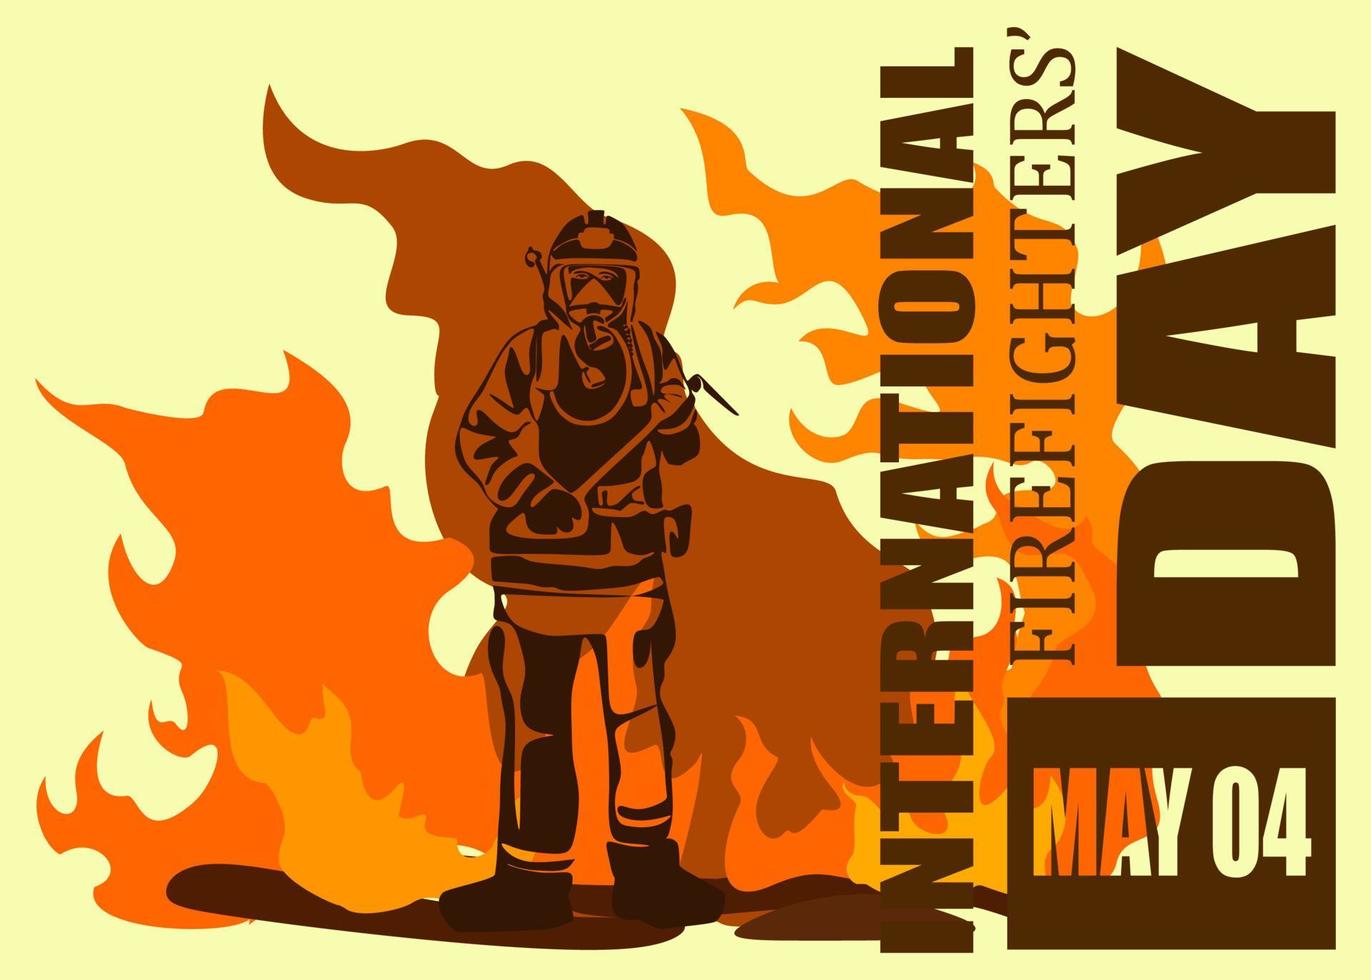 illustration vectorielle de silhouette de pompier, comme bannière, affiche ou modèle pour la journée internationale des pompiers. vecteur